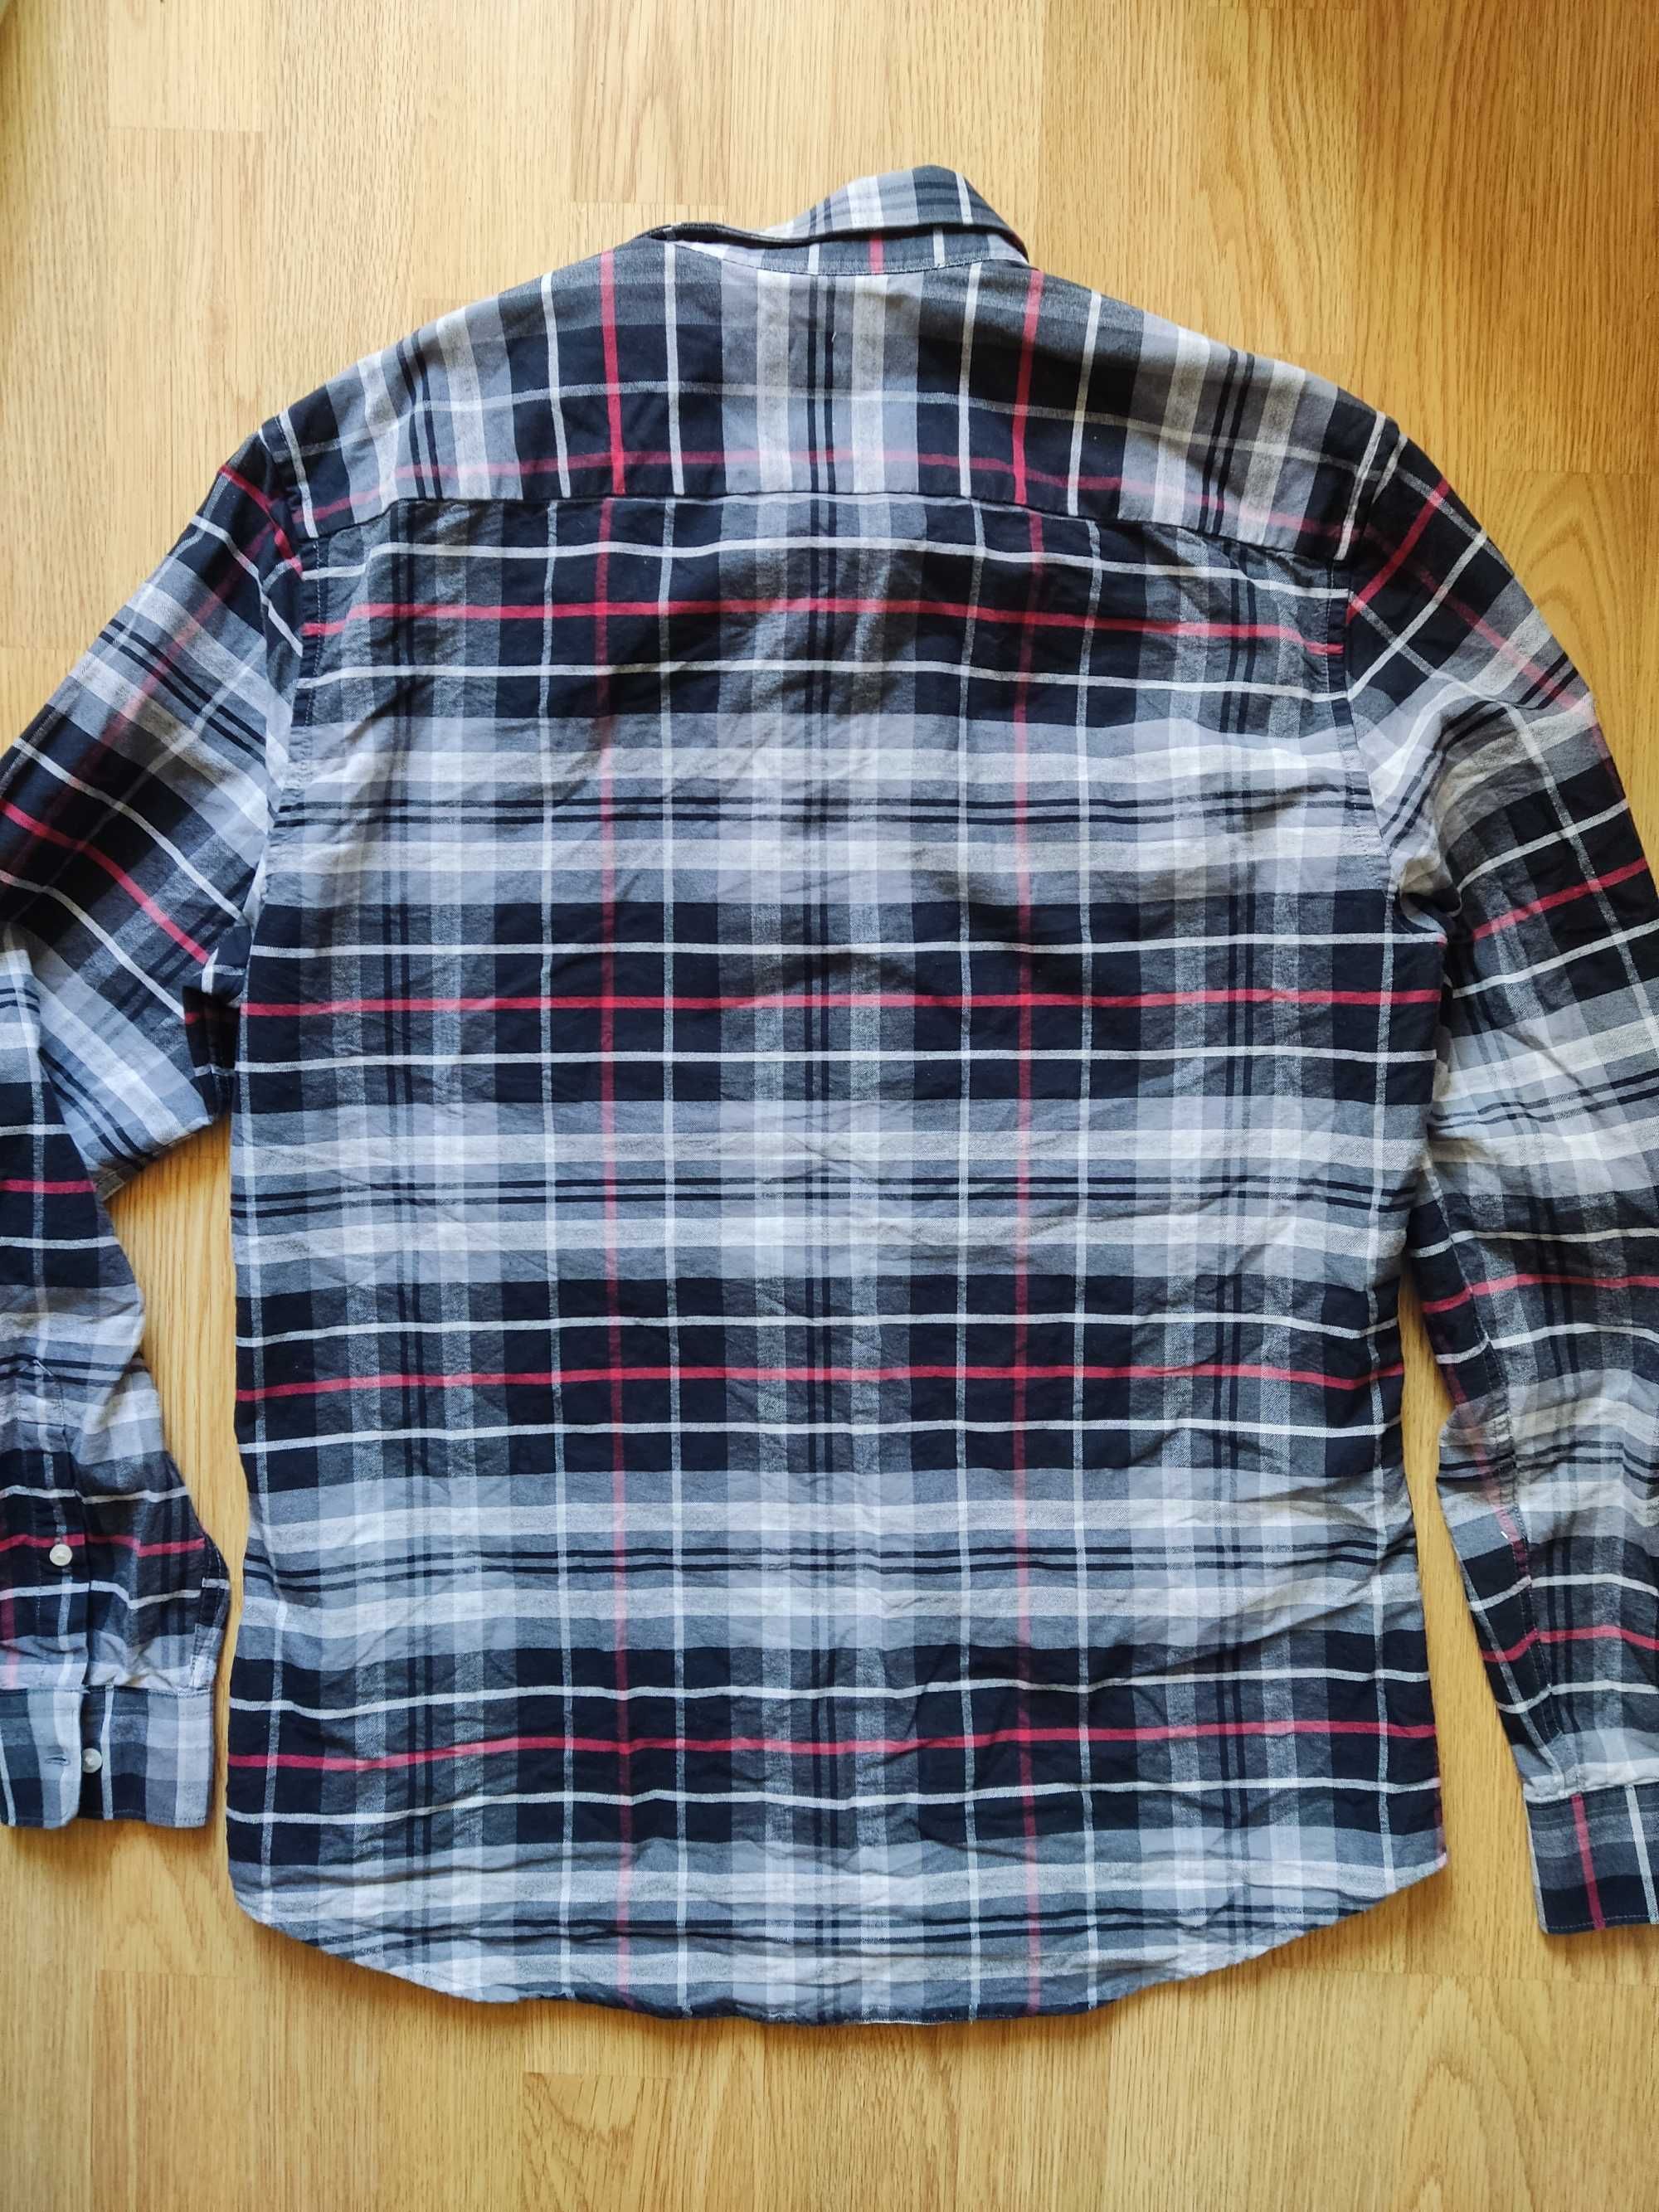 Рубашка в клетку H&M, размер М, Оксфорд, качество